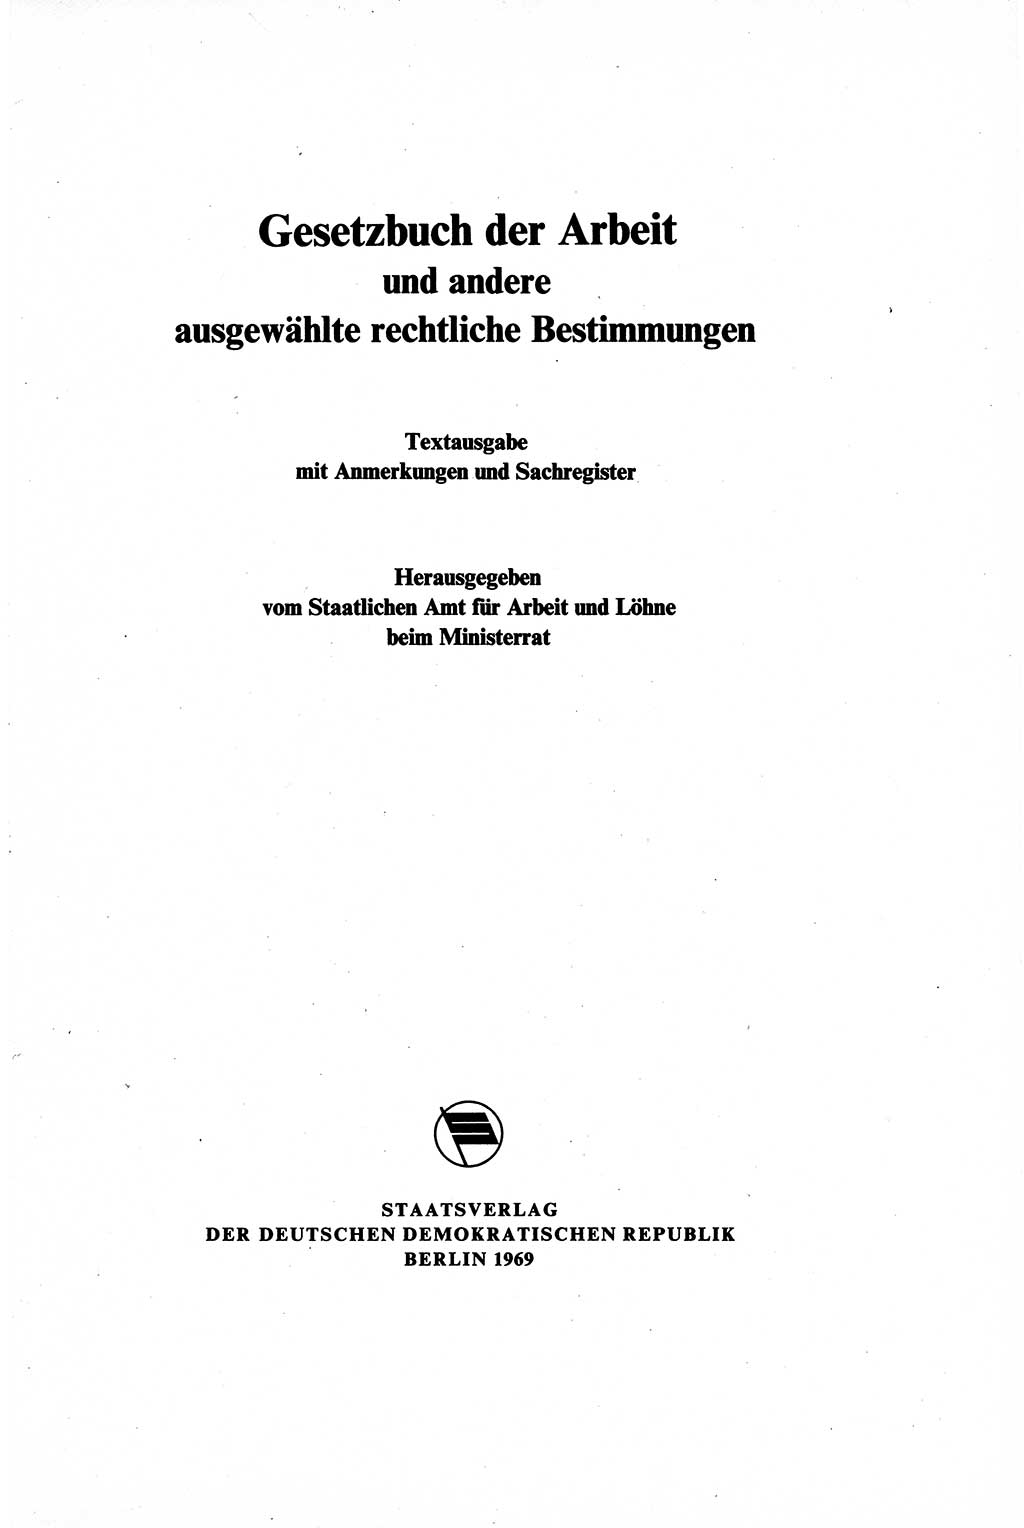 Gesetzbuch der Arbeit (GBA) und andere ausgewählte rechtliche Bestimmungen [Deutsche Demokratische Republik (DDR)] 1968, Seite 3 (GBA DDR 1968, S. 3)